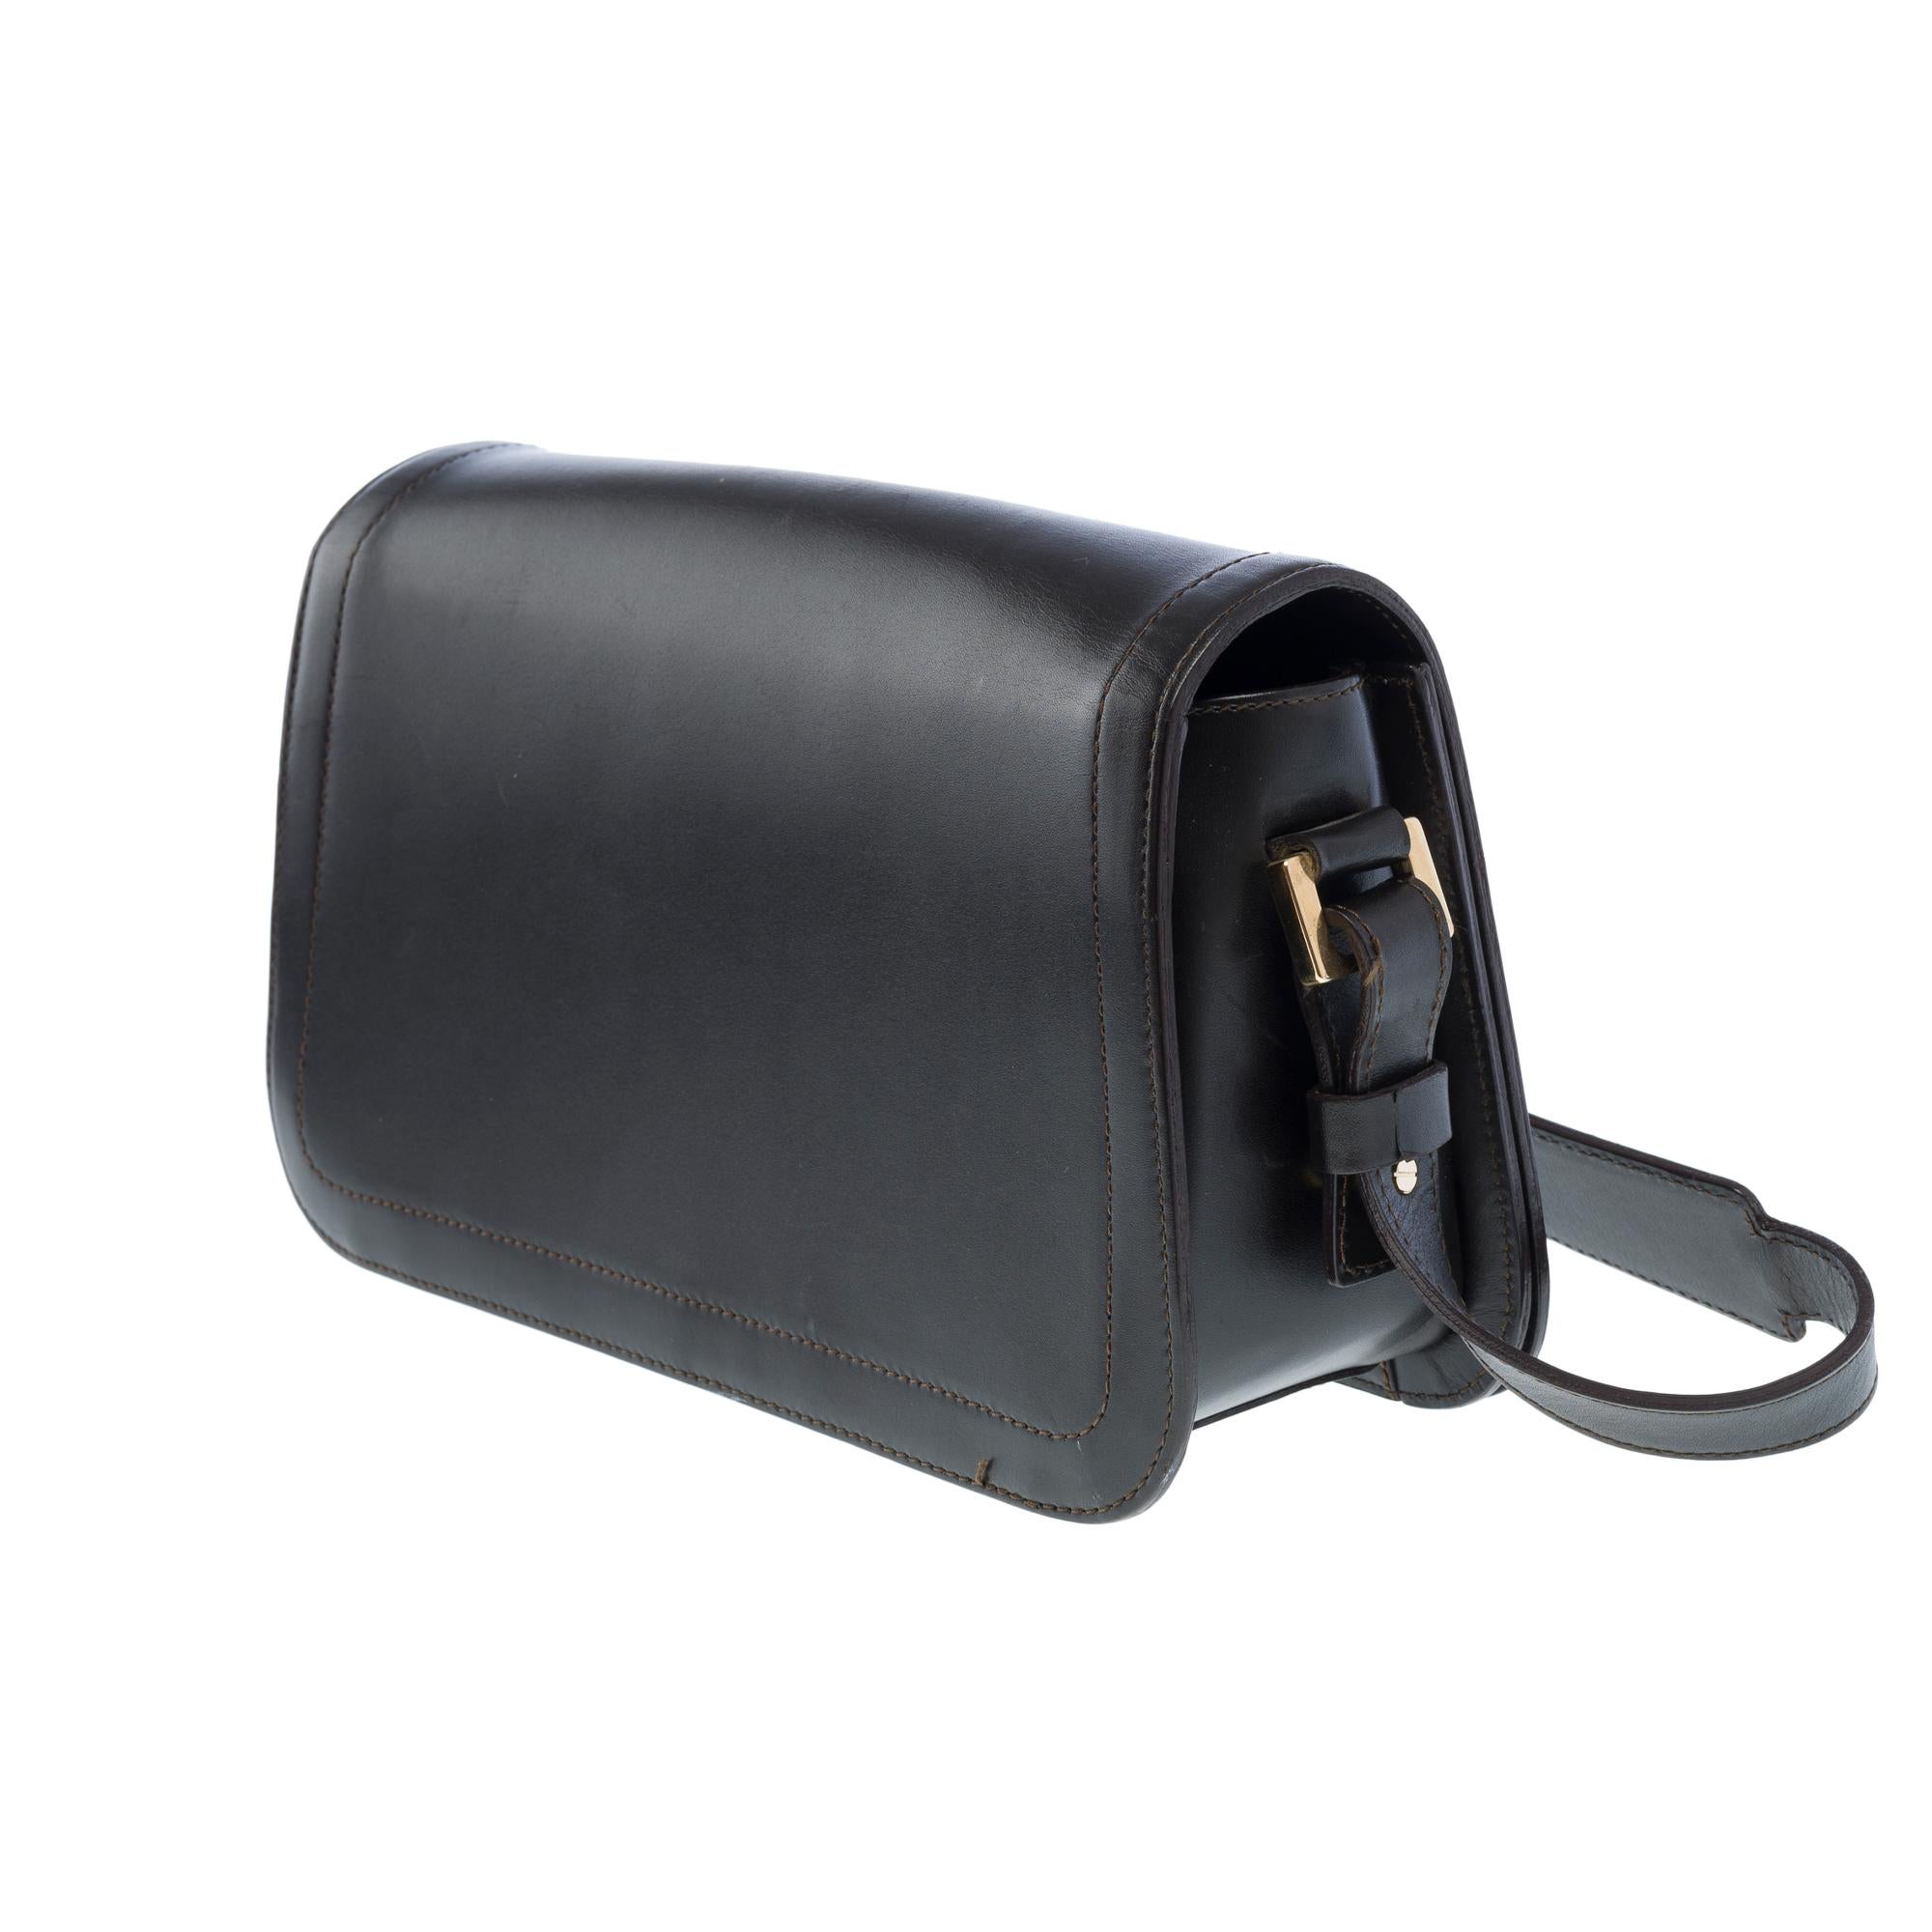 Celine Triomphe shoulder flap bag in black leather, GHW 1